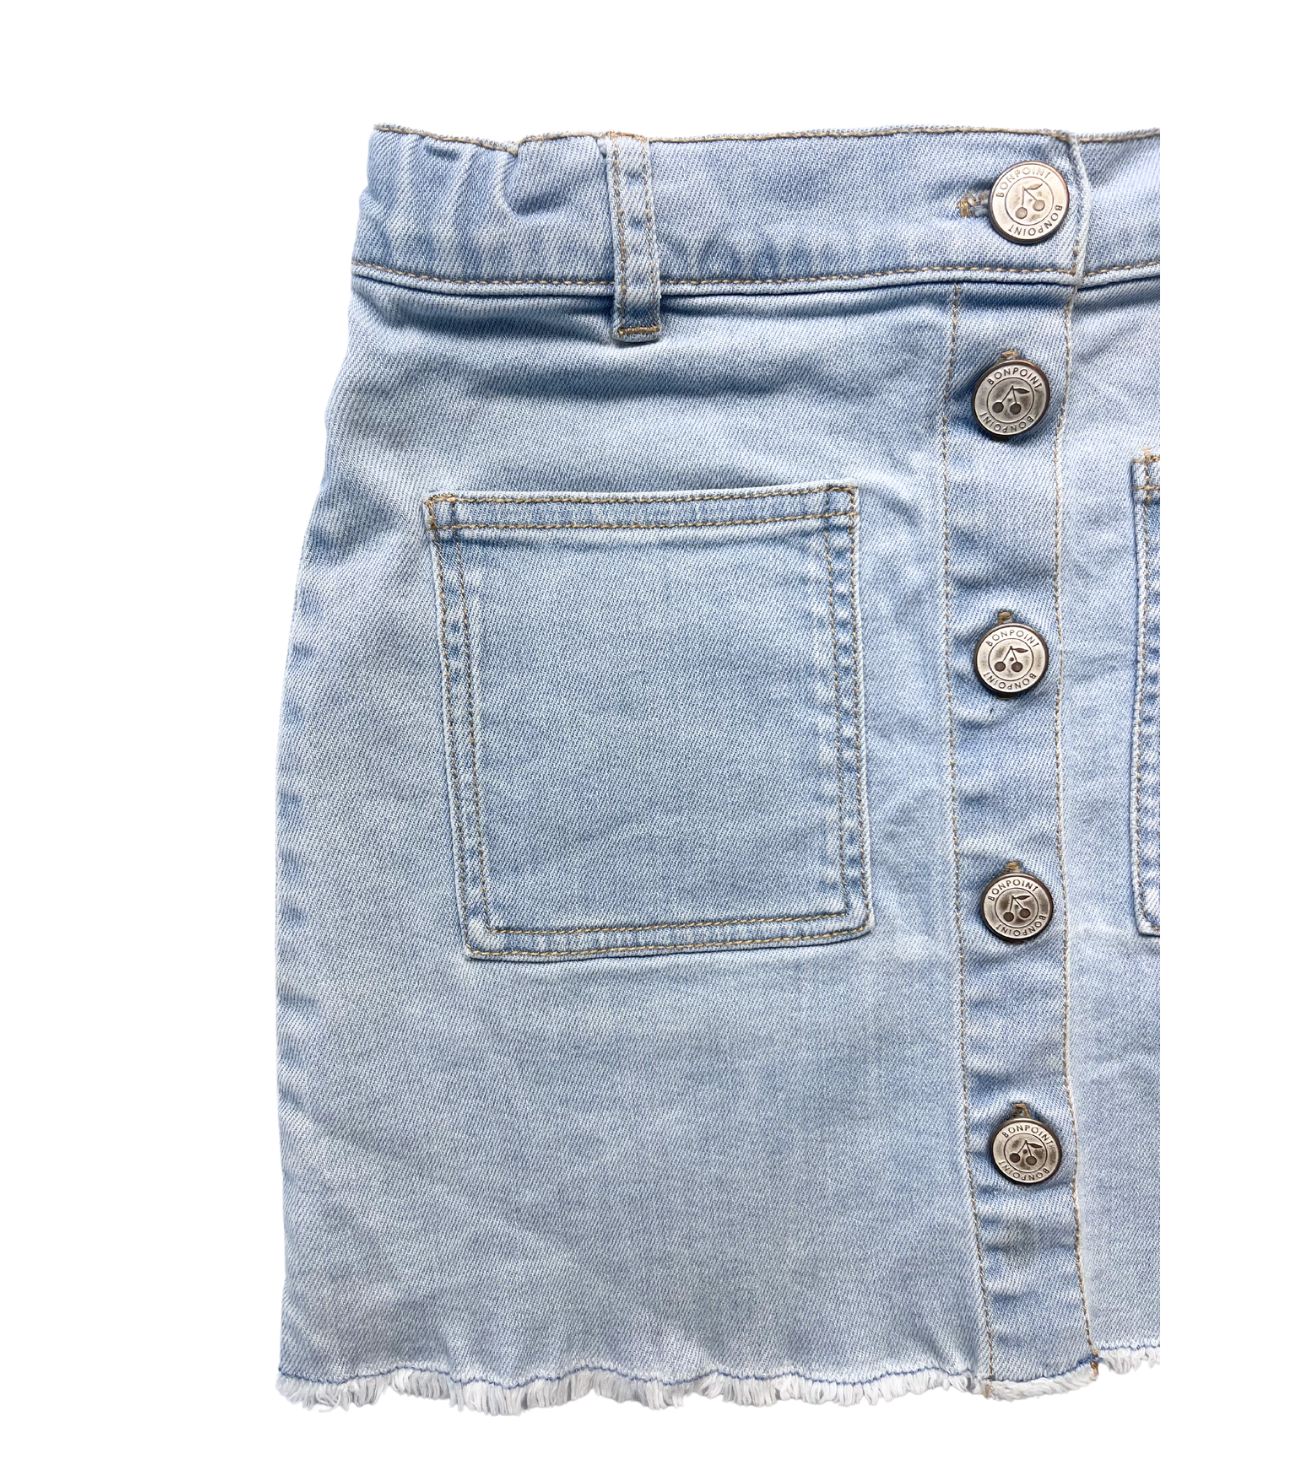 BONPOINT - Jupe en jean bleu clair - 8 ans